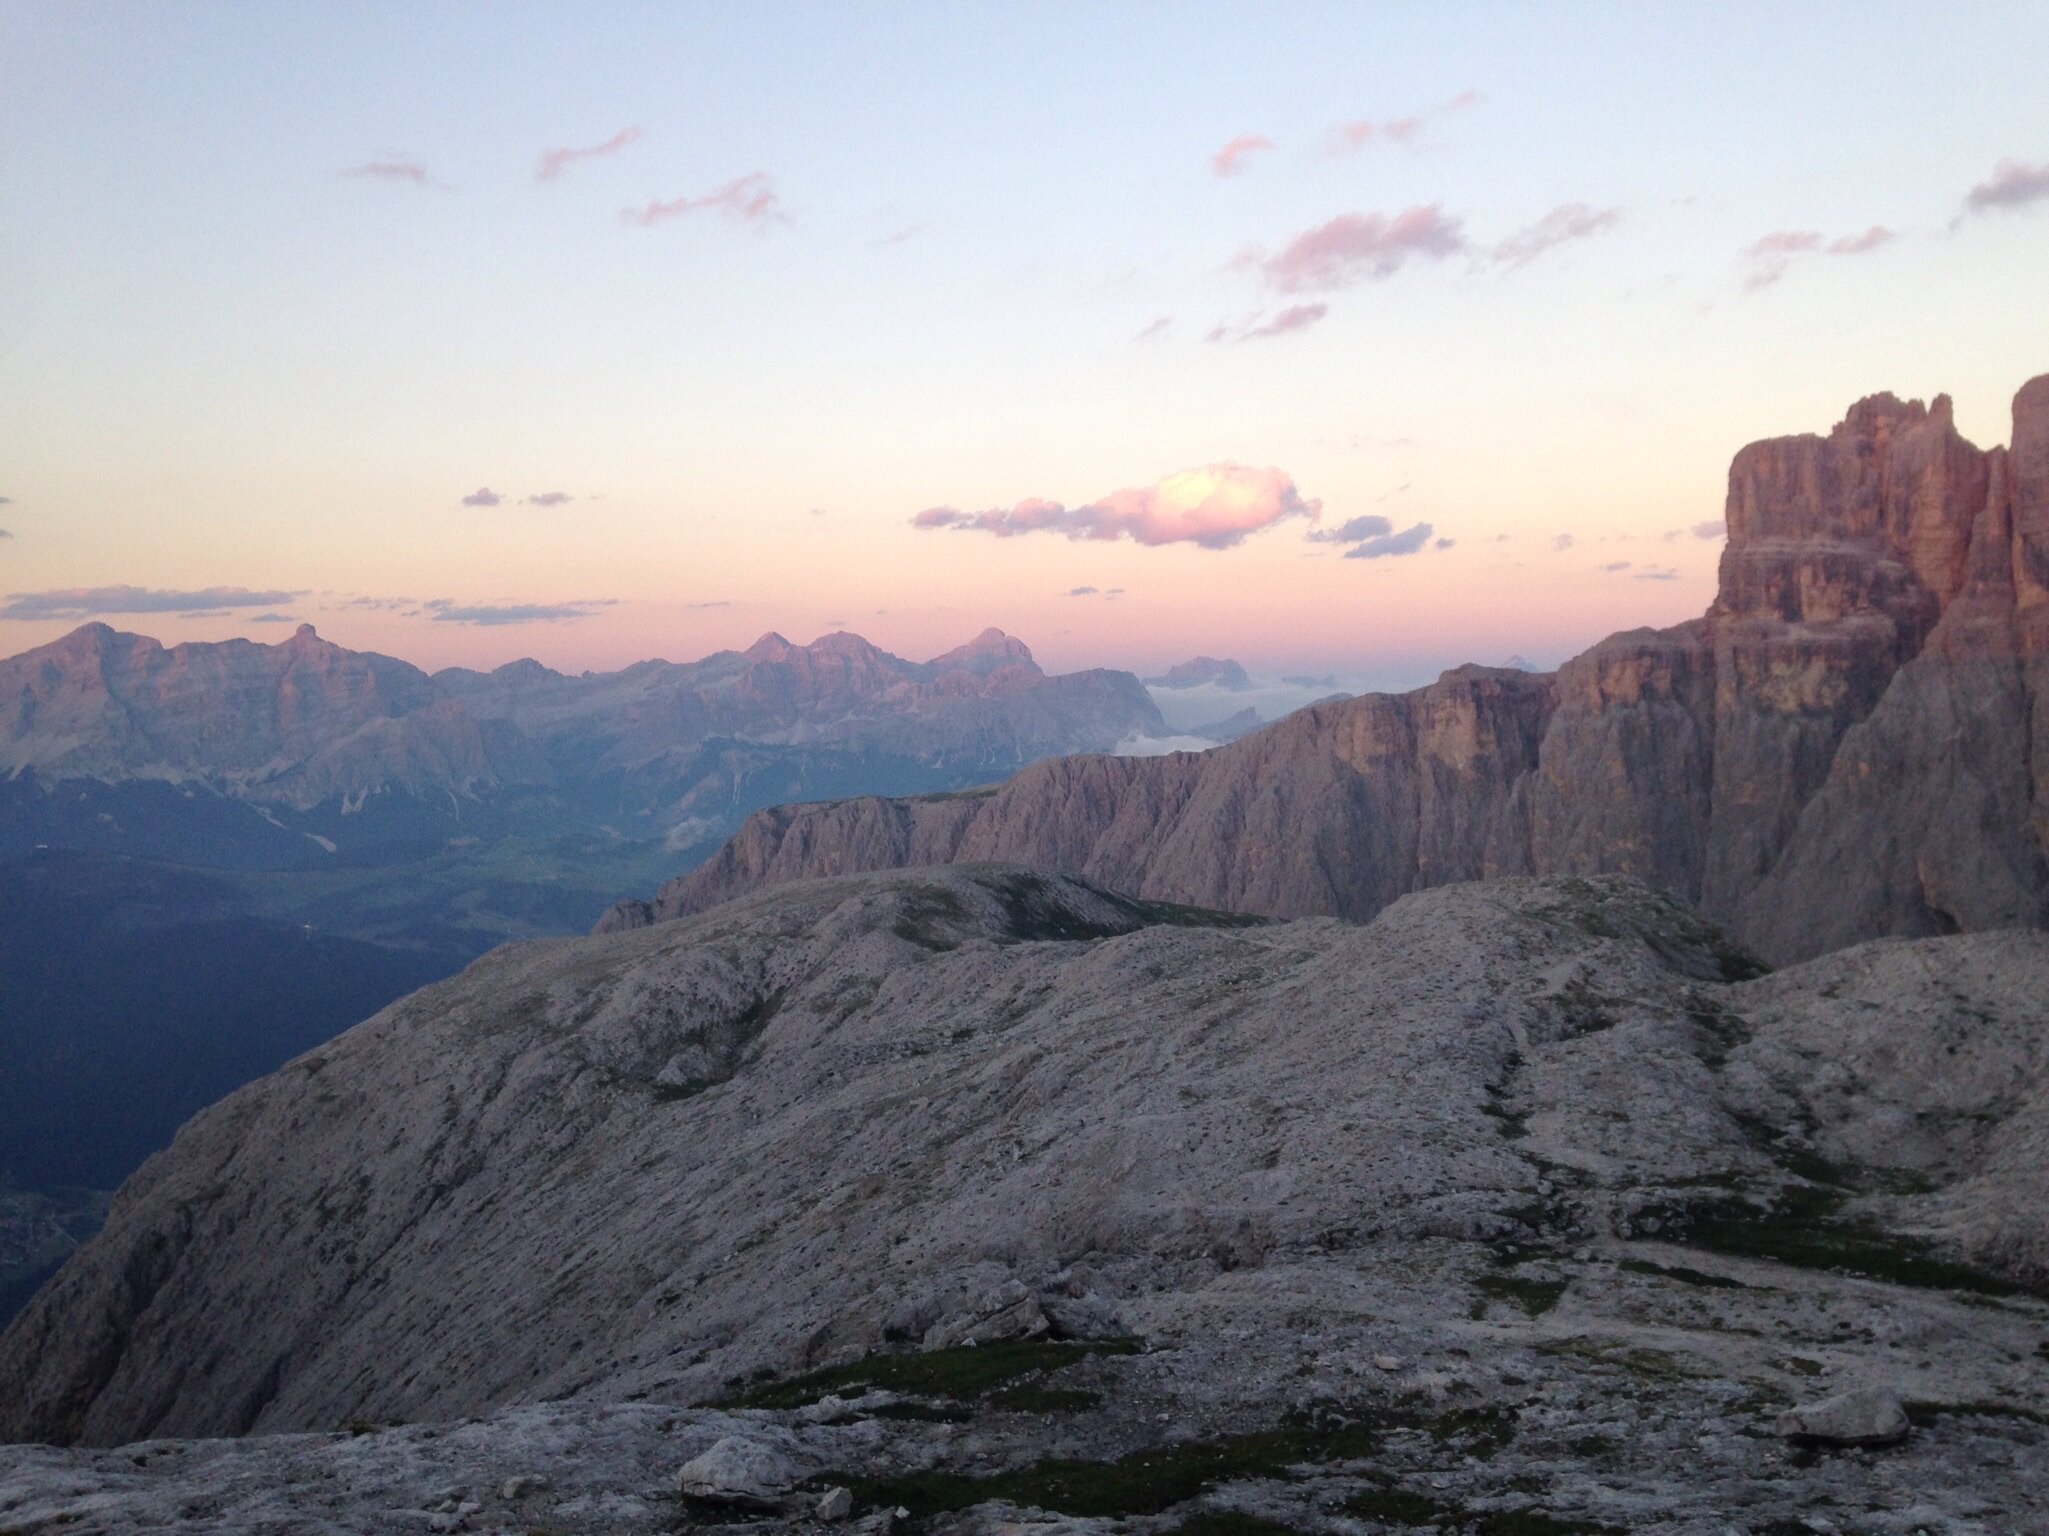 Italian Dolomites at Sunset Alta Via 2 Hut to Hut Hiking Pathways Active Travel